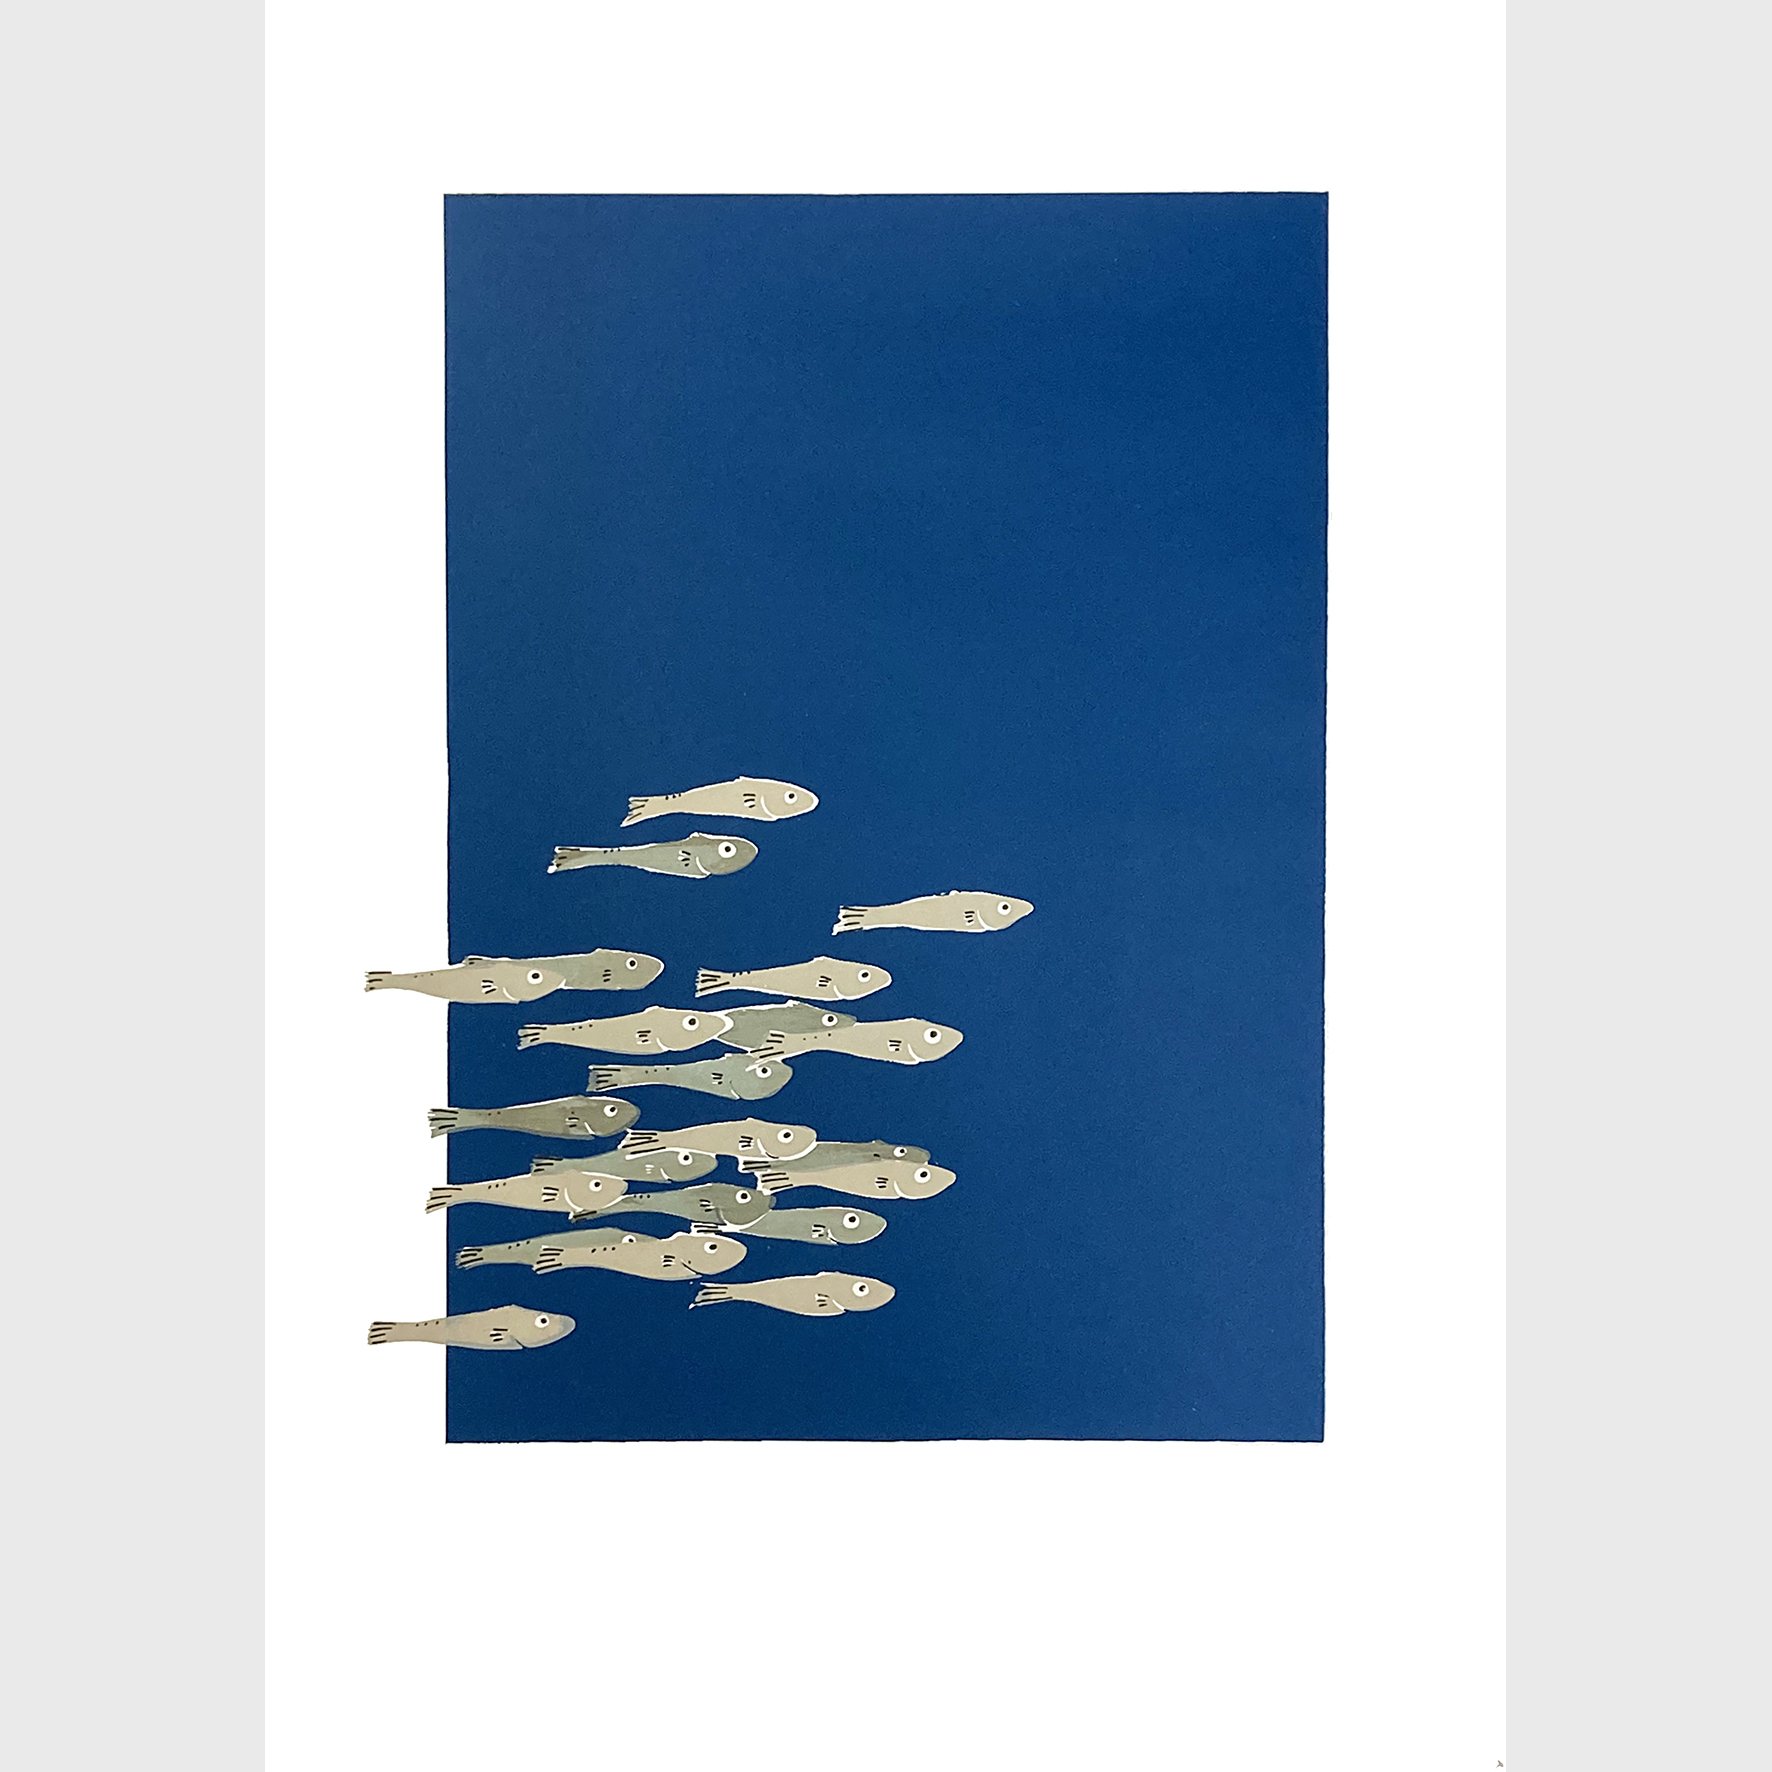   Minnows  Silkscreen print Unframed paper size: 420 x 594mm 